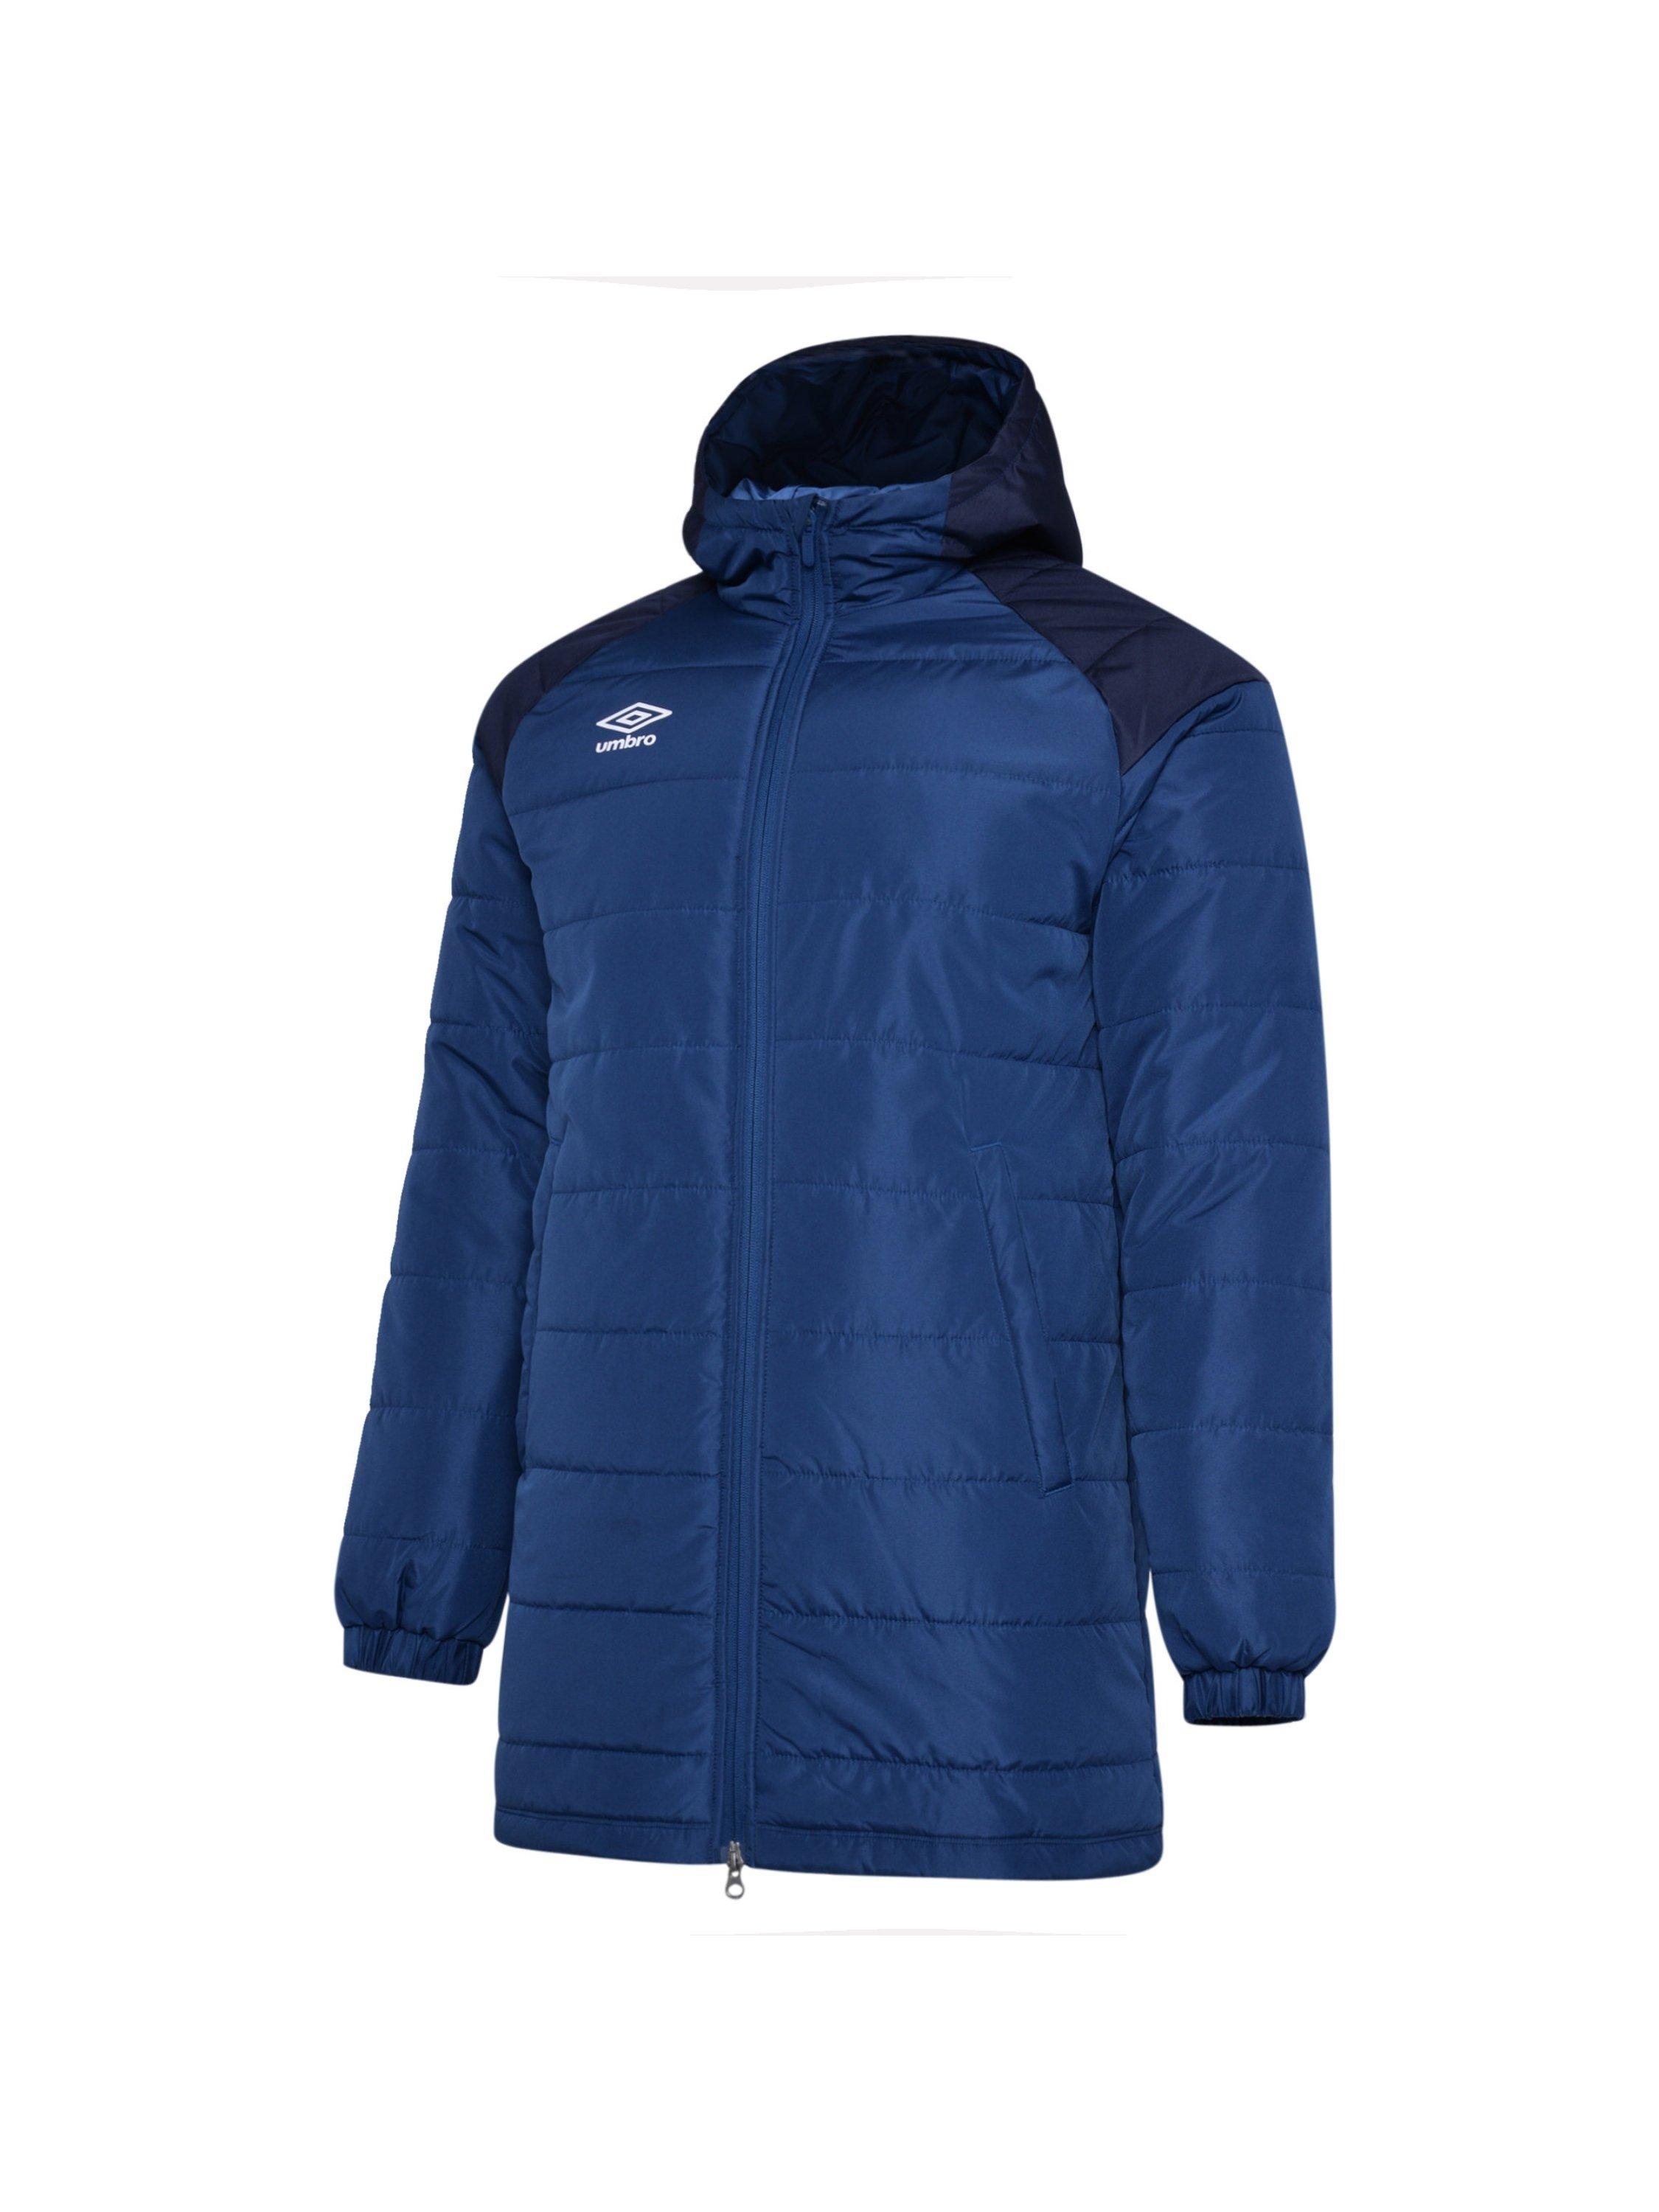 Утепленная куртка (с капюшоном) Umbro, синий куртка umbro силуэт свободный утепленная размер xxl синий